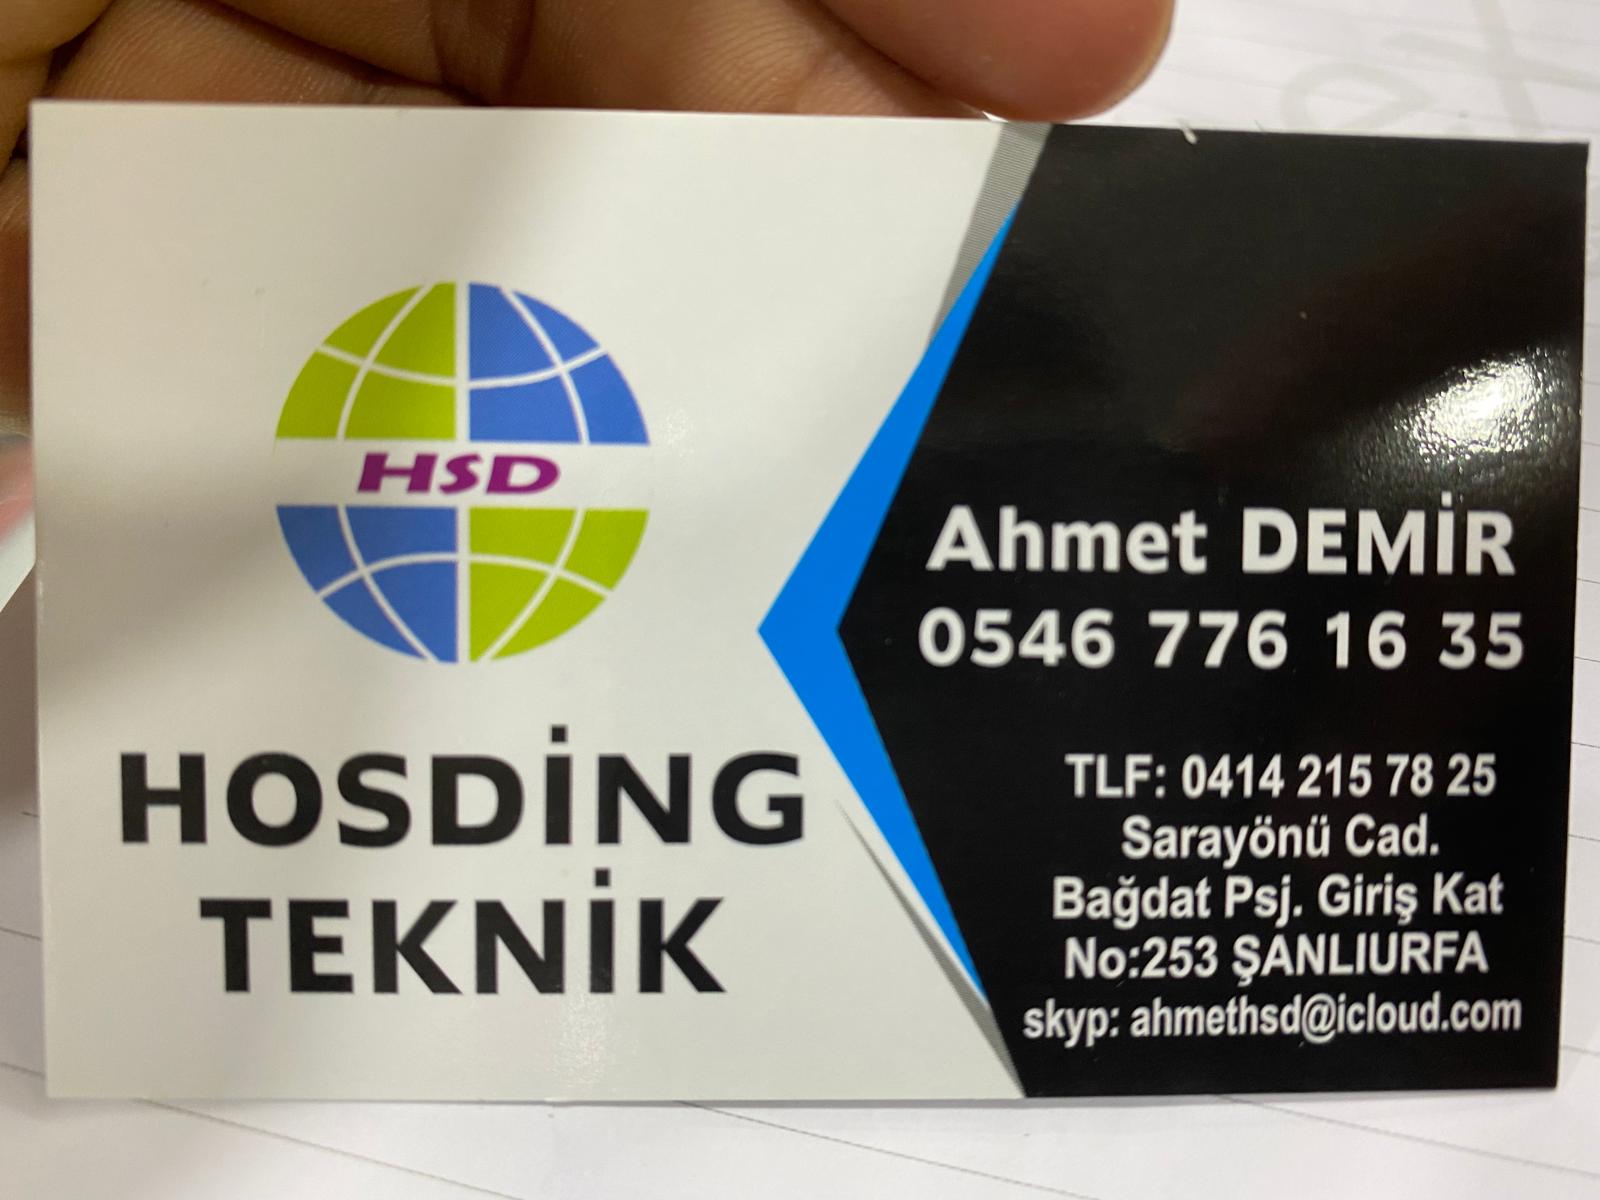 HSD Hosding – GSM Hosding – 0546 776 16 35